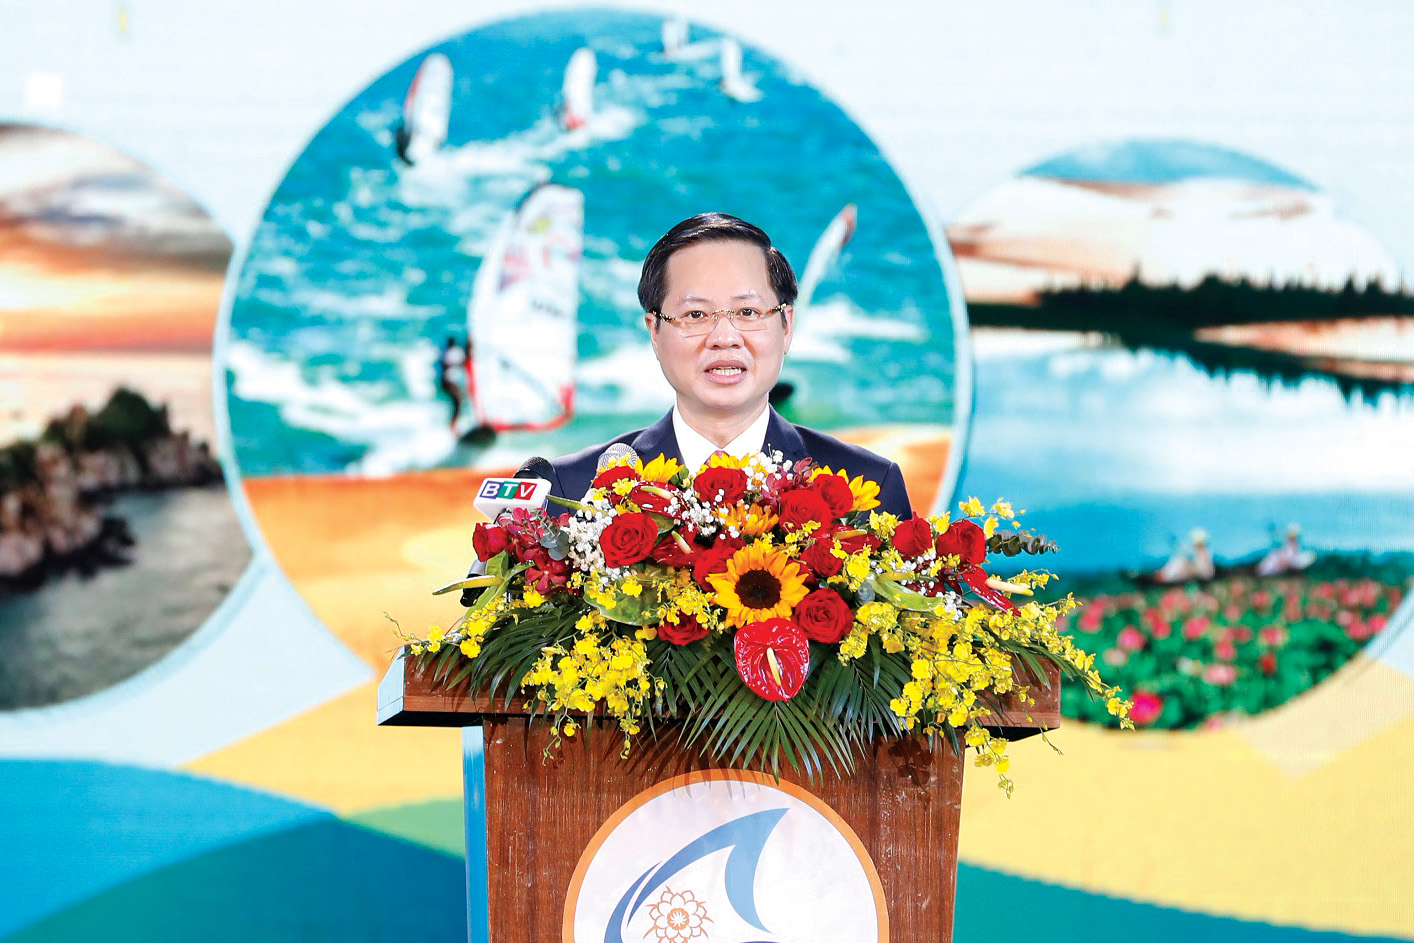 Đồng chí Đoàn Anh Dũng - Chủ tịch UBND tỉnh Bình Thuận phát biểu tại Lễ công bố Năm Du lịch quốc gia 2023 với chủ đề “Bình Thuận - Hội tụ xanh” gắn với Lễ hội đếm ngược chào năm mới 2023. Đây là sự kiện mở màn cho chuỗi các sự kiện trong Năm Du lịch quốc gia 2023 được tổ chức tại Bình Thuận.